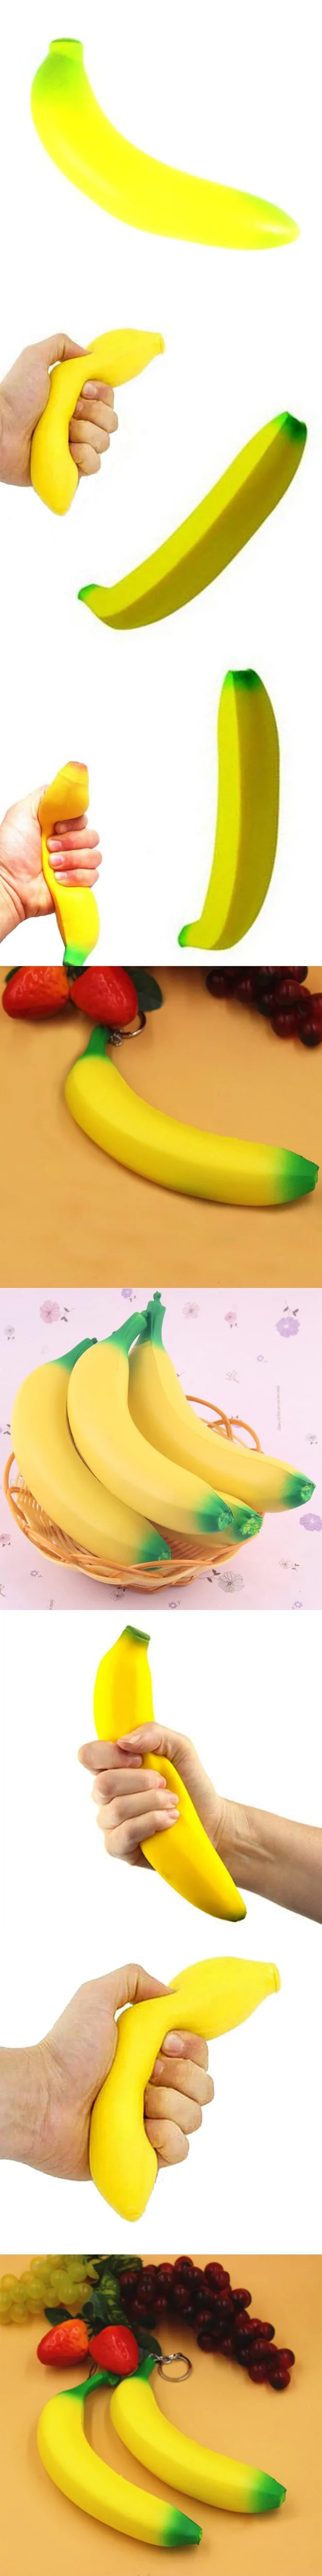 Squeeze банан Непоседа Игрушка Супер замедлить рост моделирование фрукты мягкий крем Ароматические хлеб забавная игрушка подарок для СДВГ